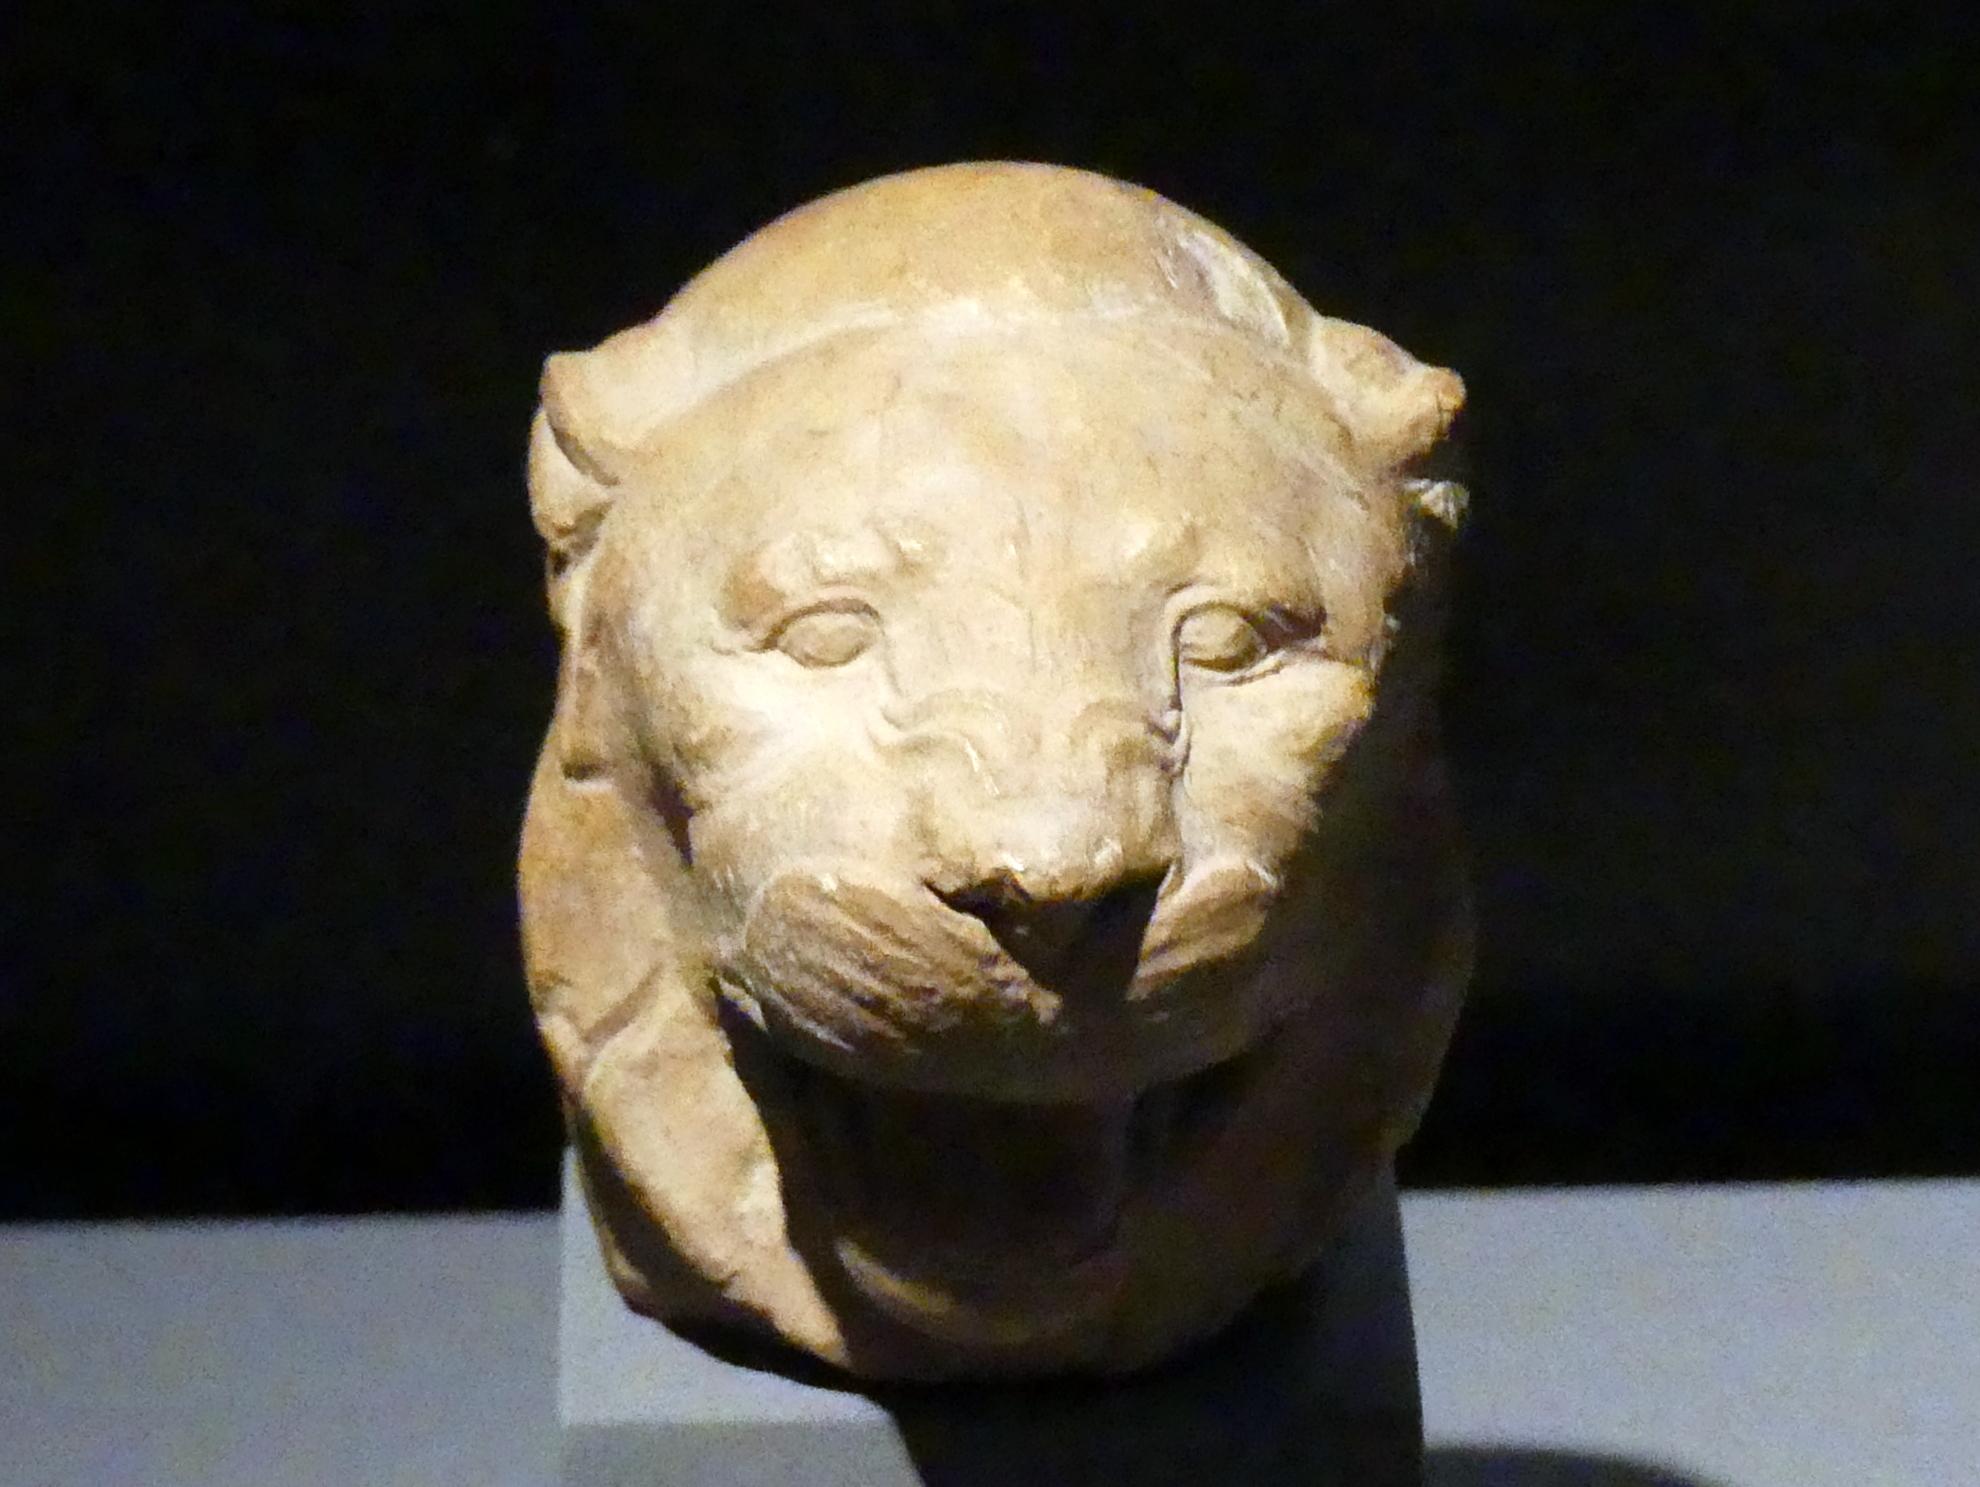 Bildhauermodell für einen Löwenkopf, Ptolemäische Zeit, 400 v. Chr. - 1 n. Chr., 300 - 200 v. Chr., Bild 1/2